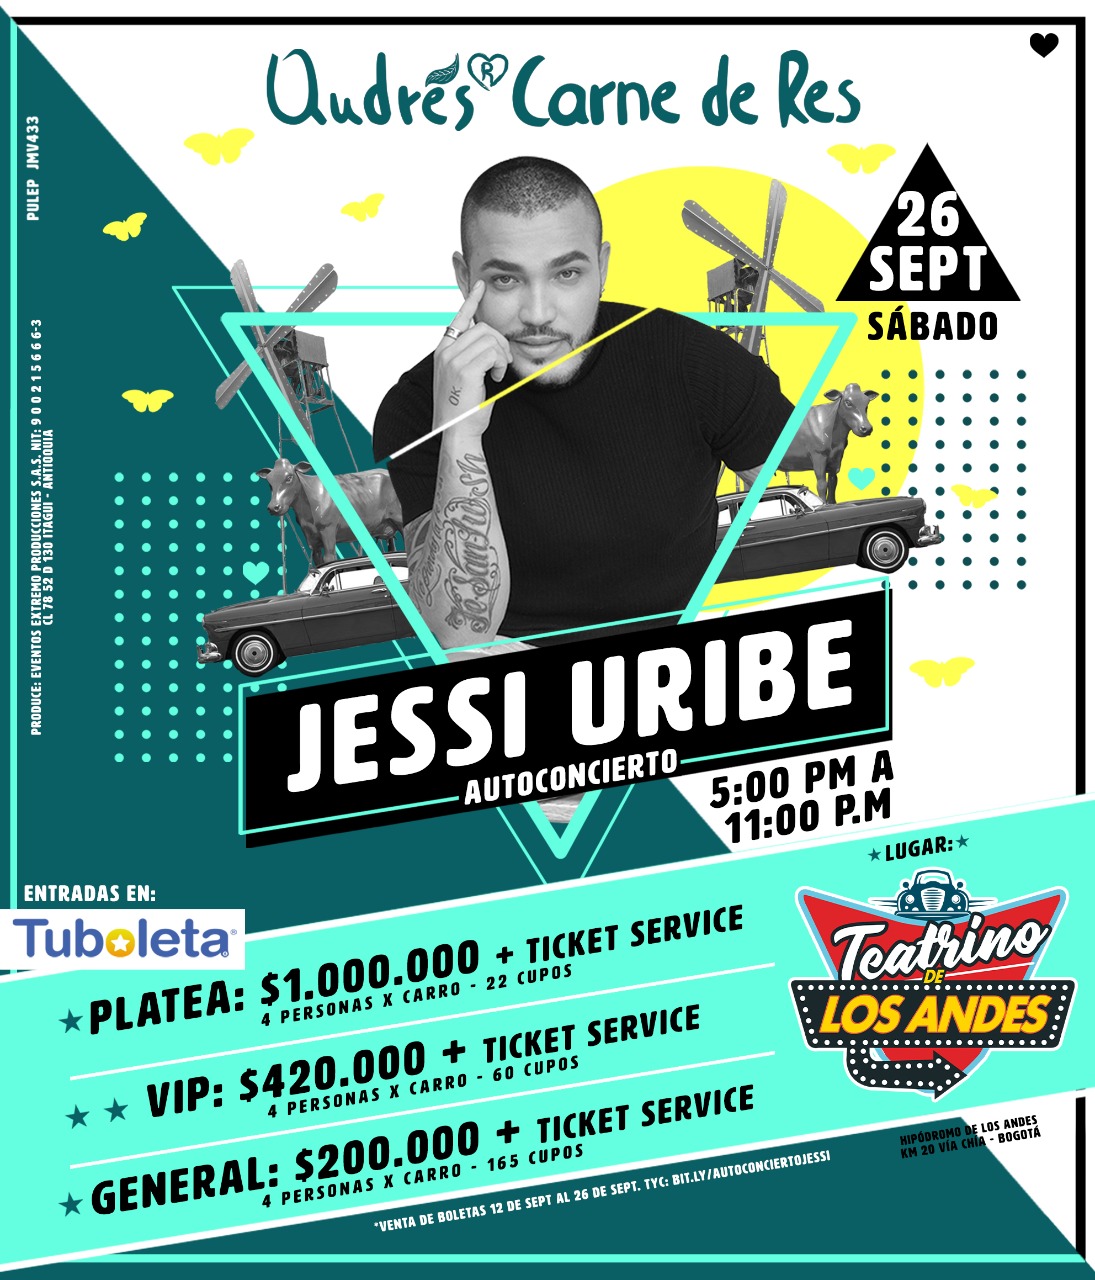 Jessi Uribe en vivo - Autoconcierto